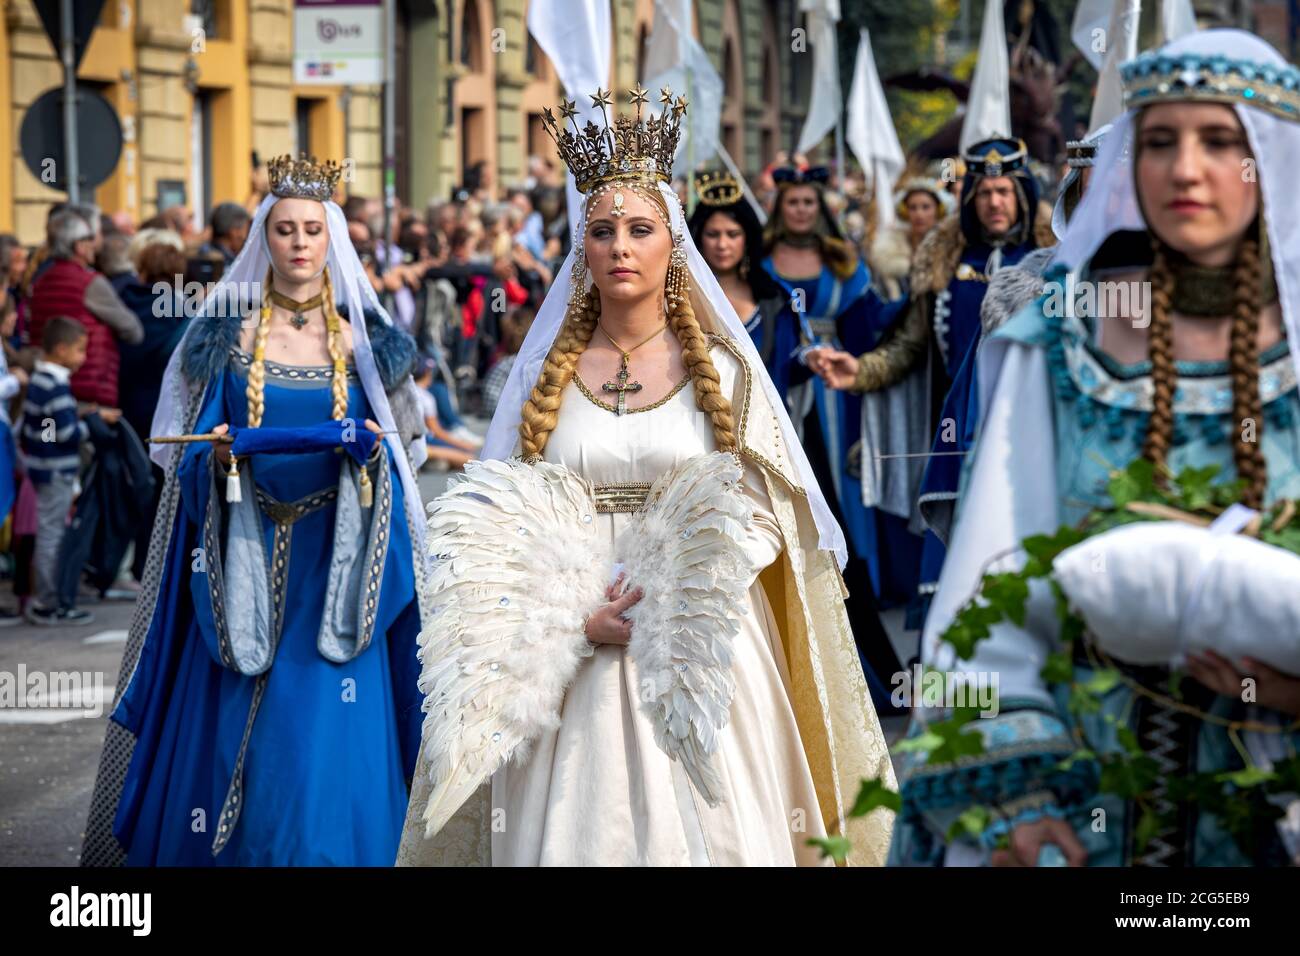 Partecipanti a abiti storici sulla Parata medievale - parte tradizionale delle celebrazioni durante l'annuale festival del Tartufo Bianco ad Alba, Italia. Foto Stock